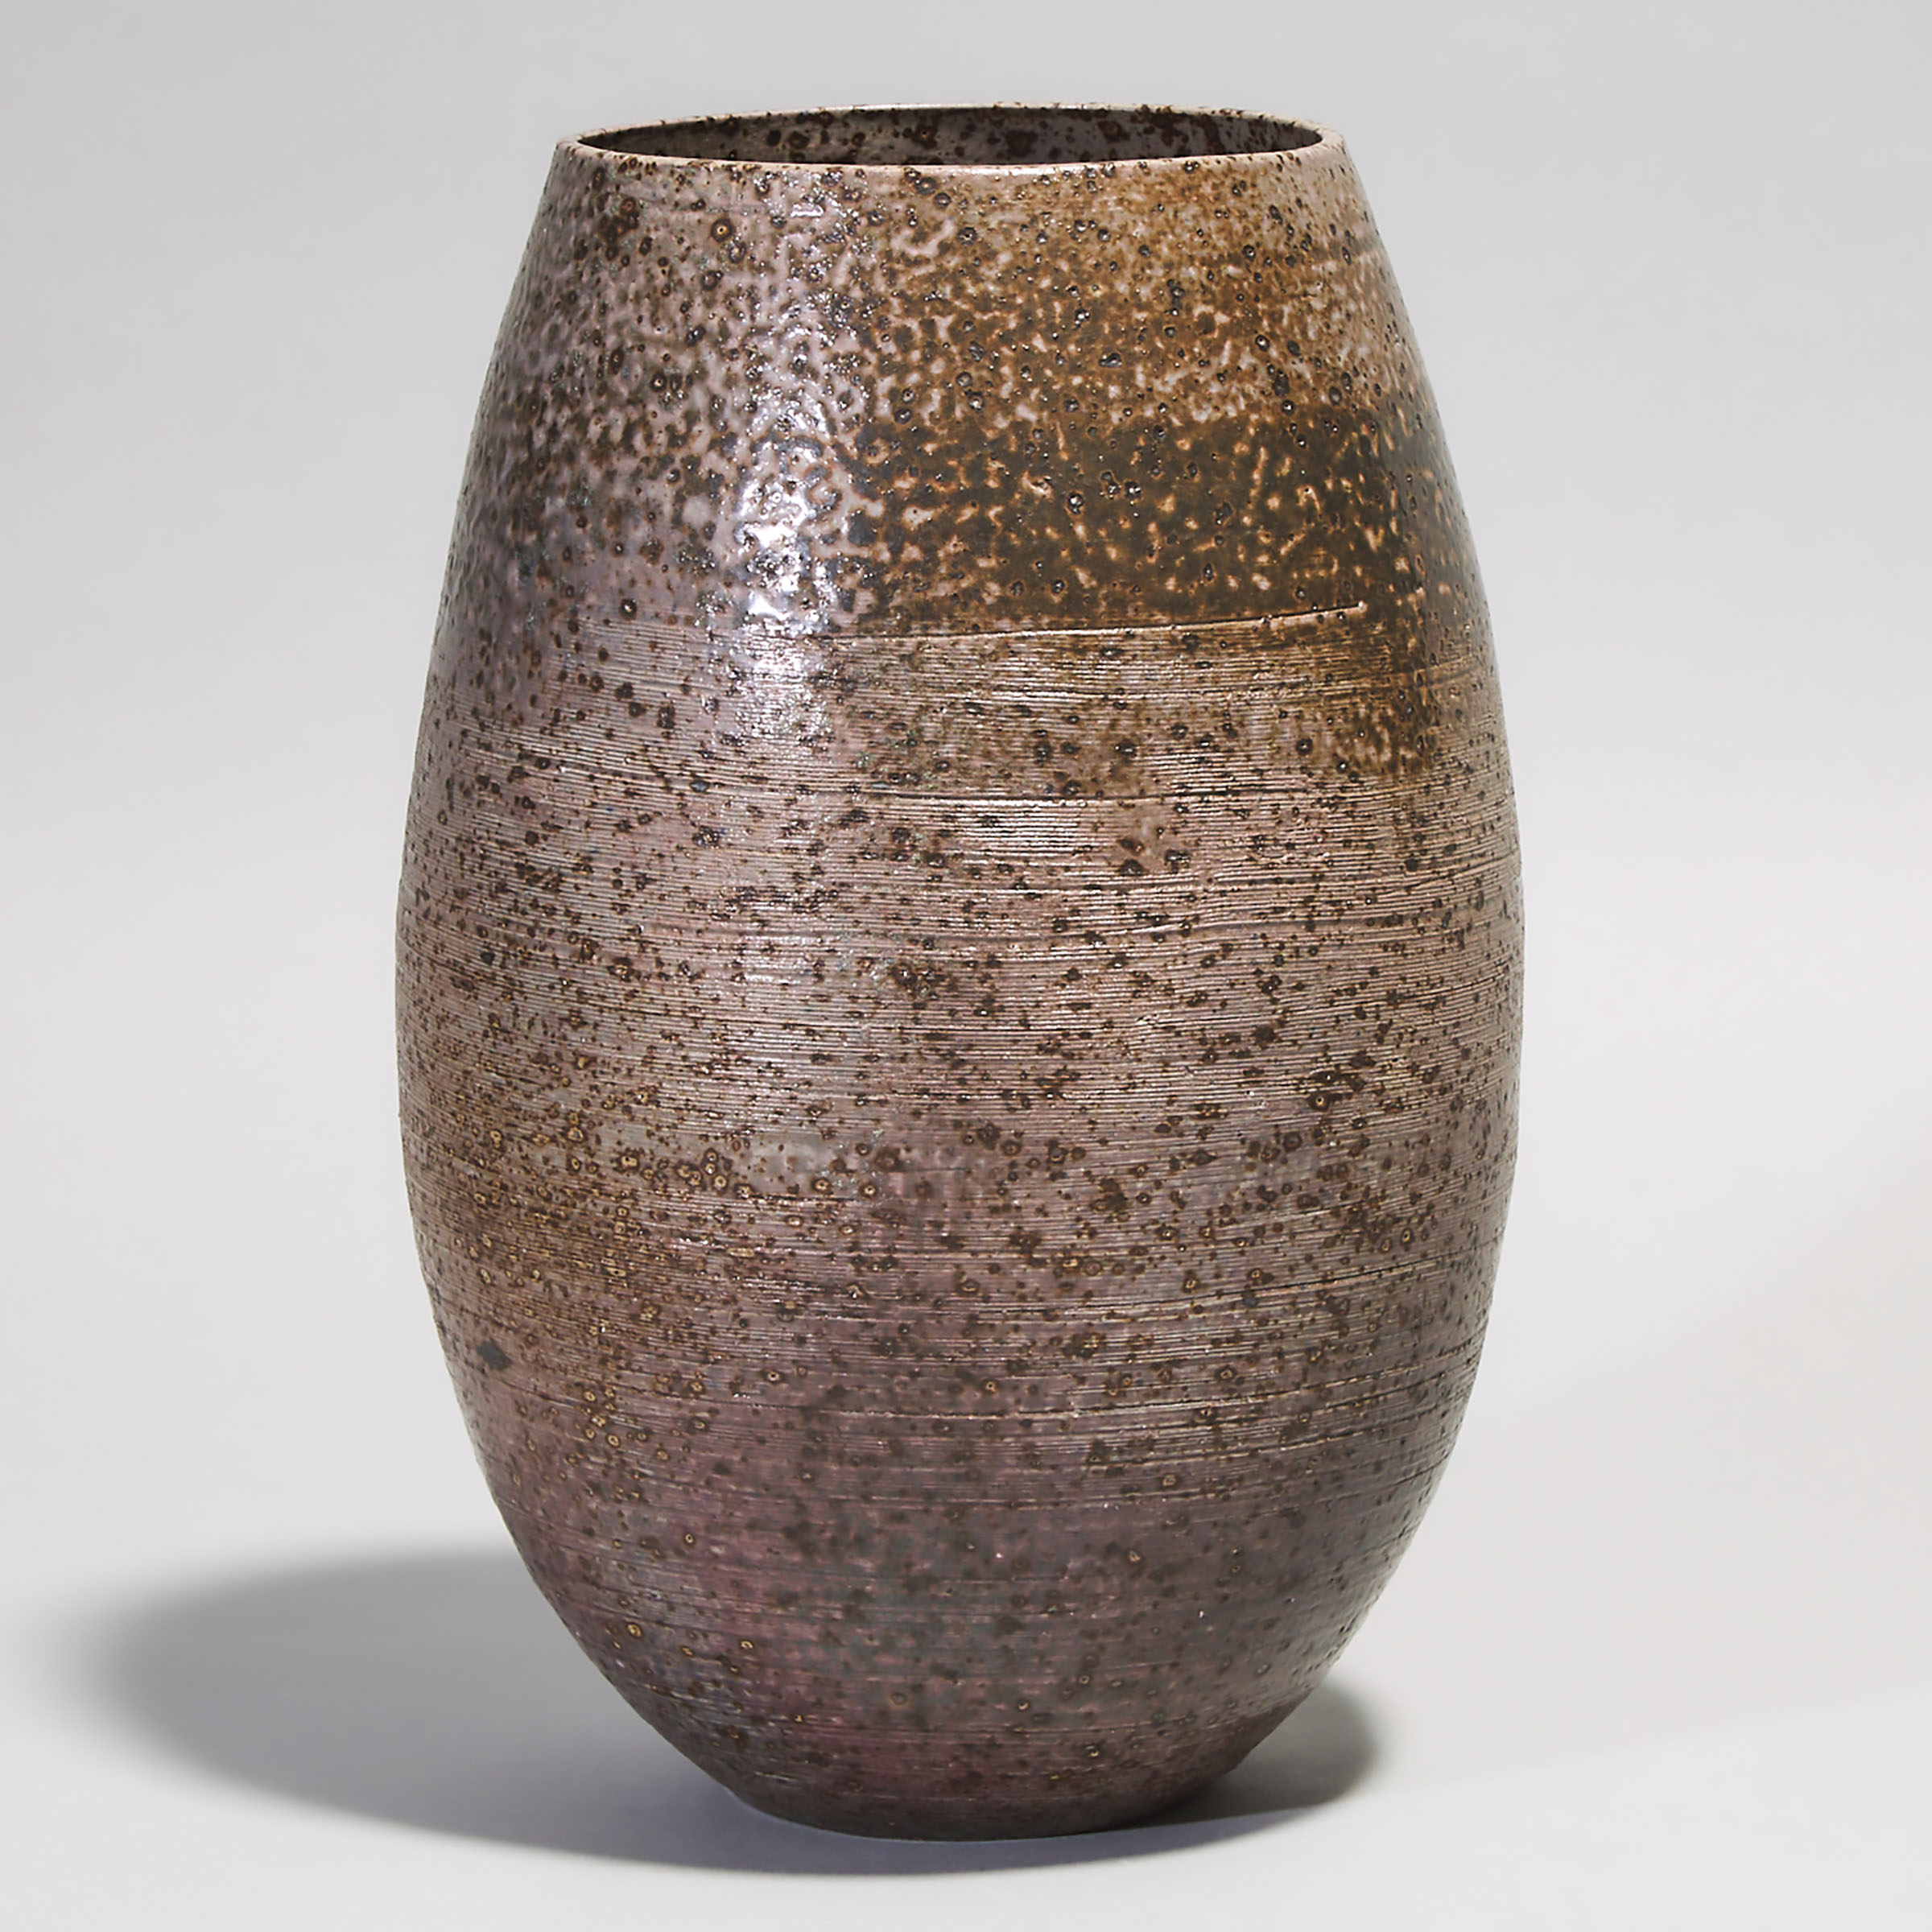 Kjeld & Erica Deichmann (Canadian, 1900–1963 and 1913–2007), Vase, mid-20th century